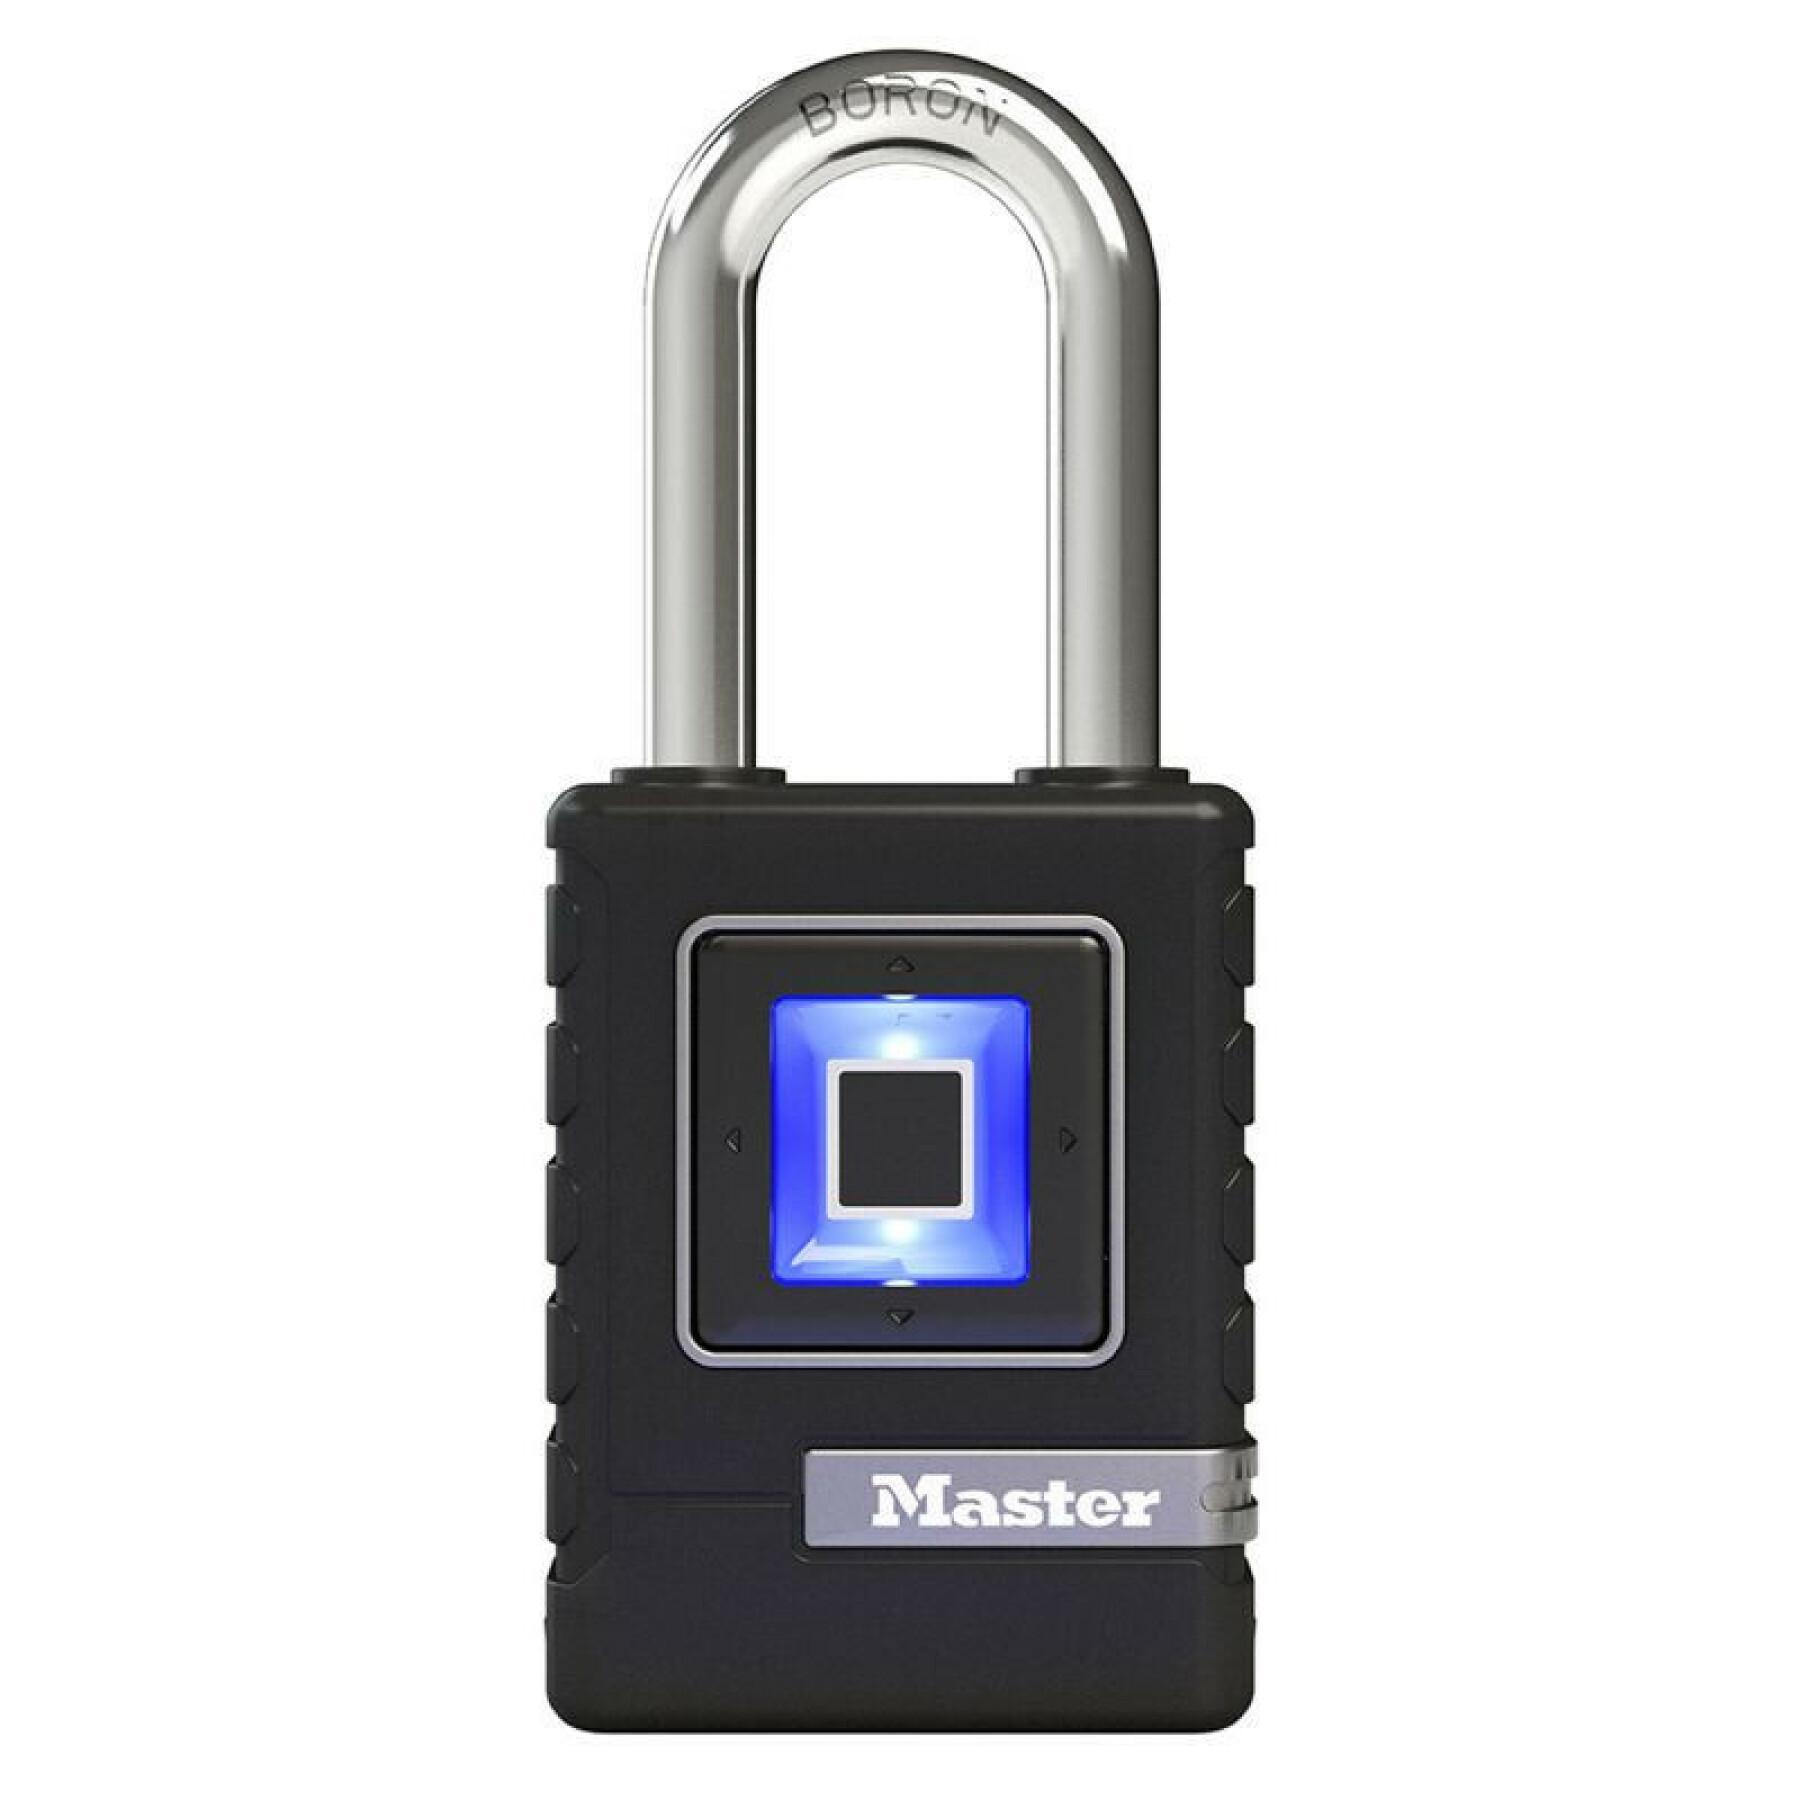 Bloqueio biométrico anti-roubo com 10 inscrições de impressões digitais, nível de segurança 8 Masterlock